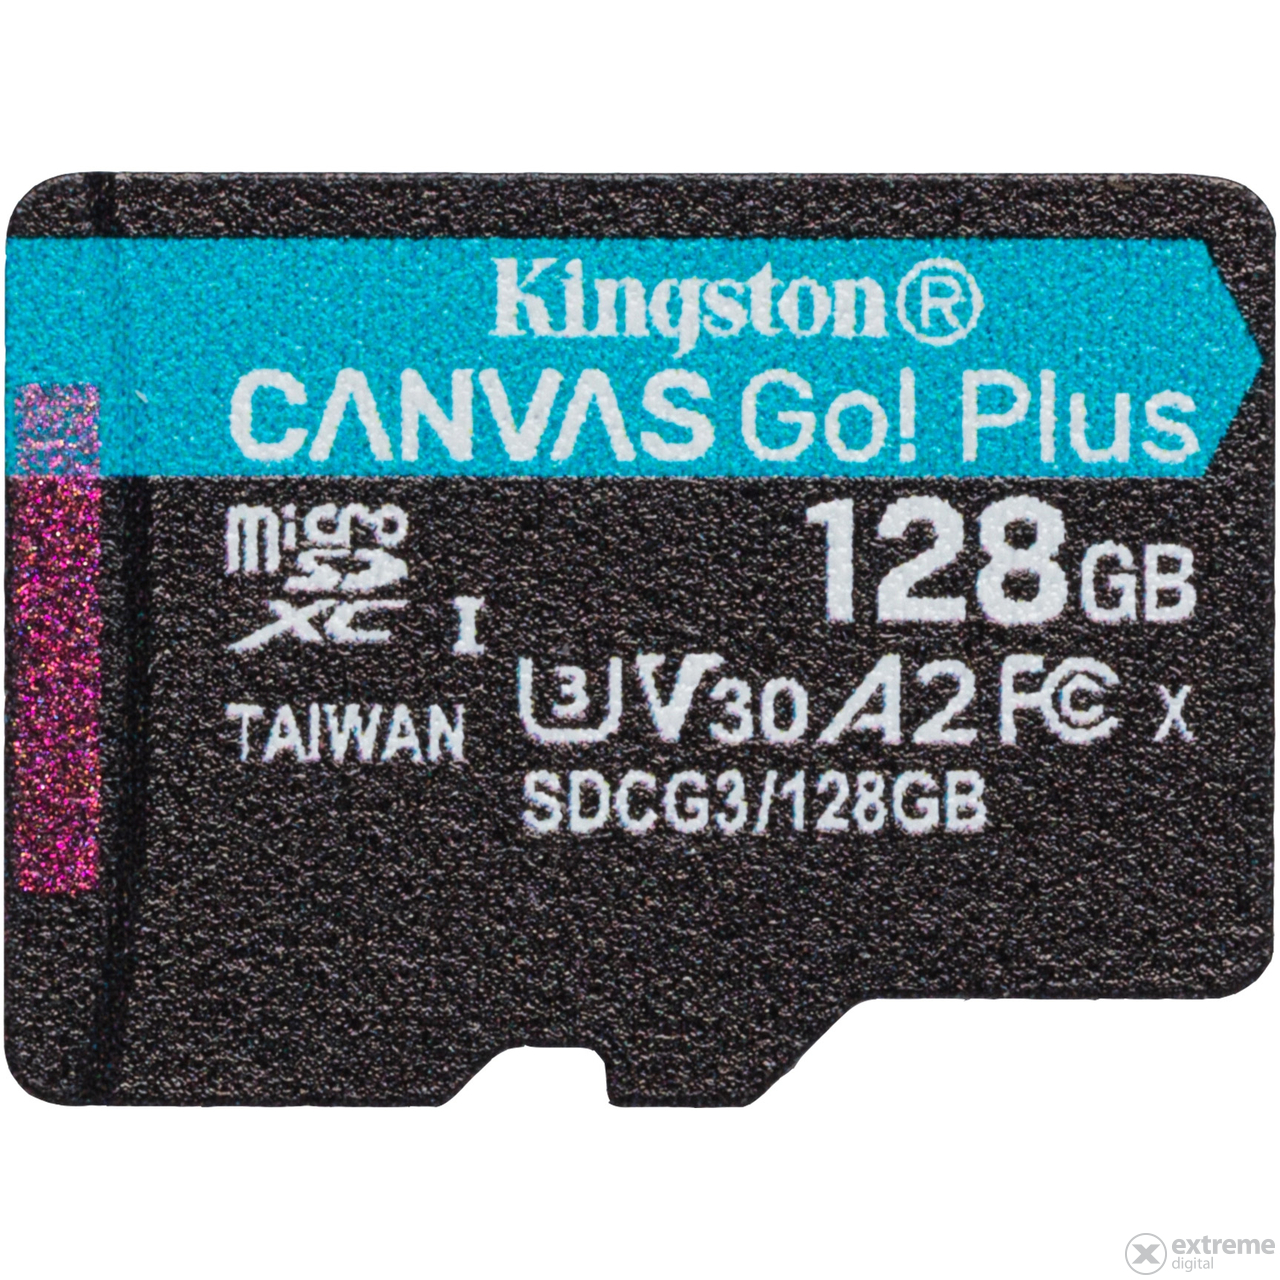 Kingston Canvas Go! Plus 128GB microSD paměťová karta